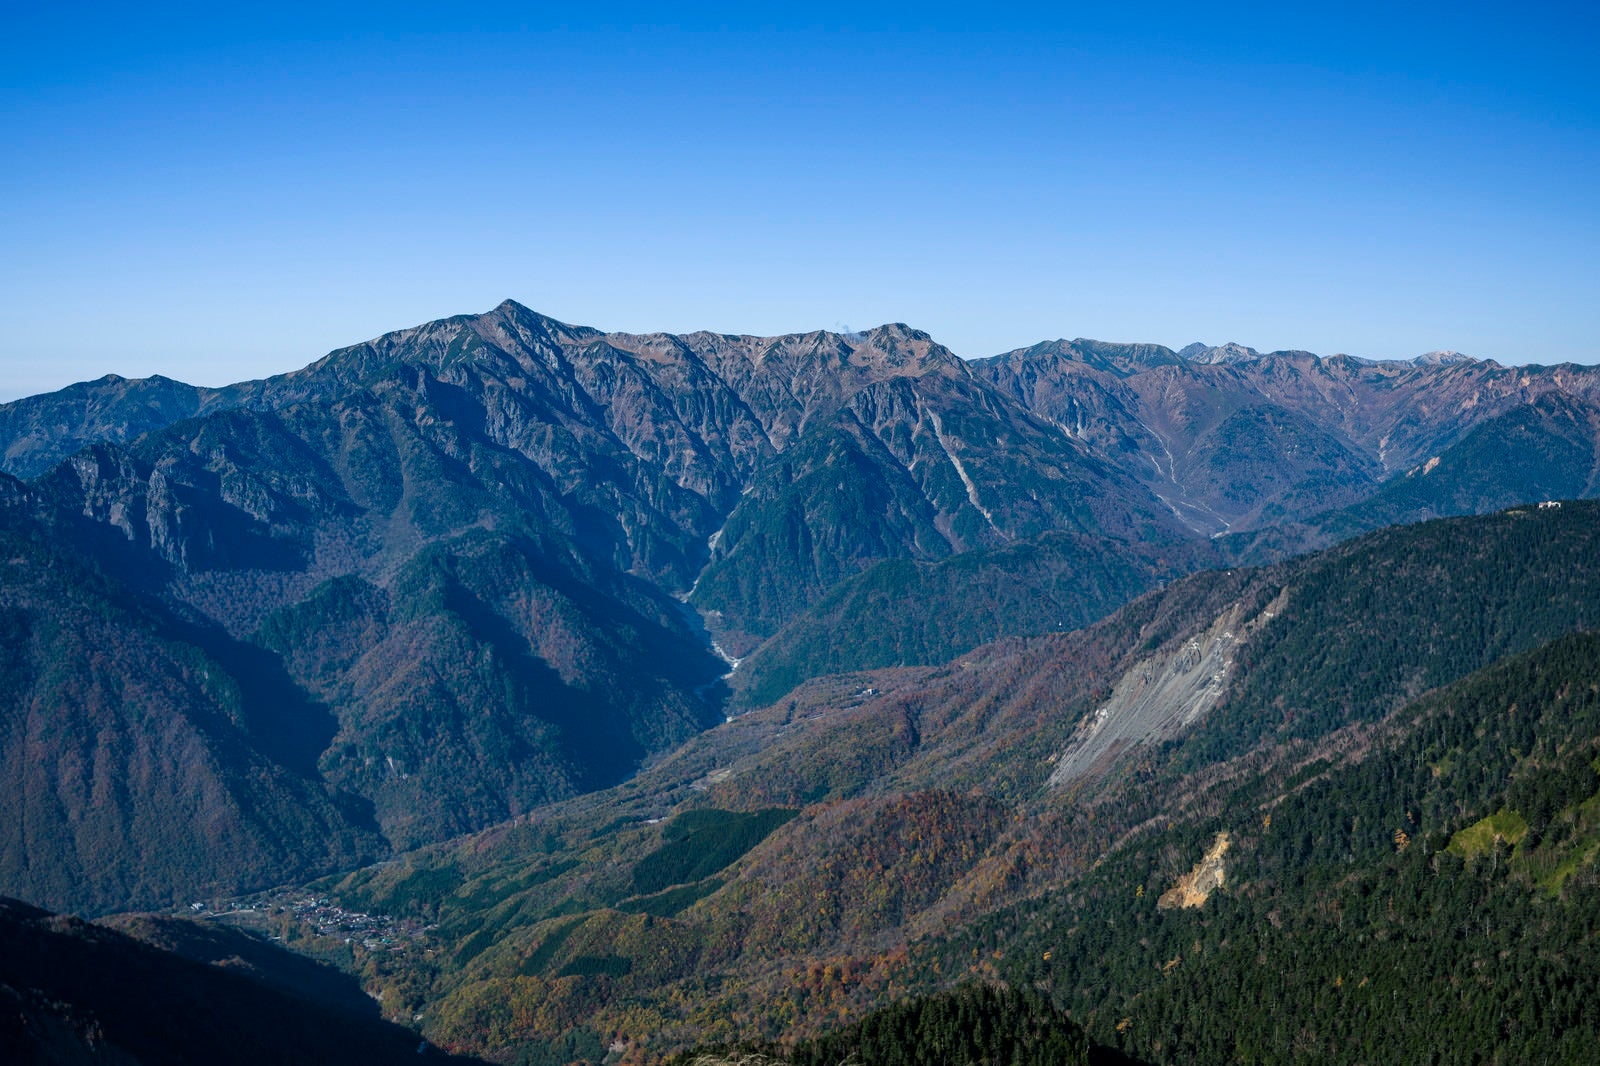 「長大な笠ヶ岳稜線を望む」の写真